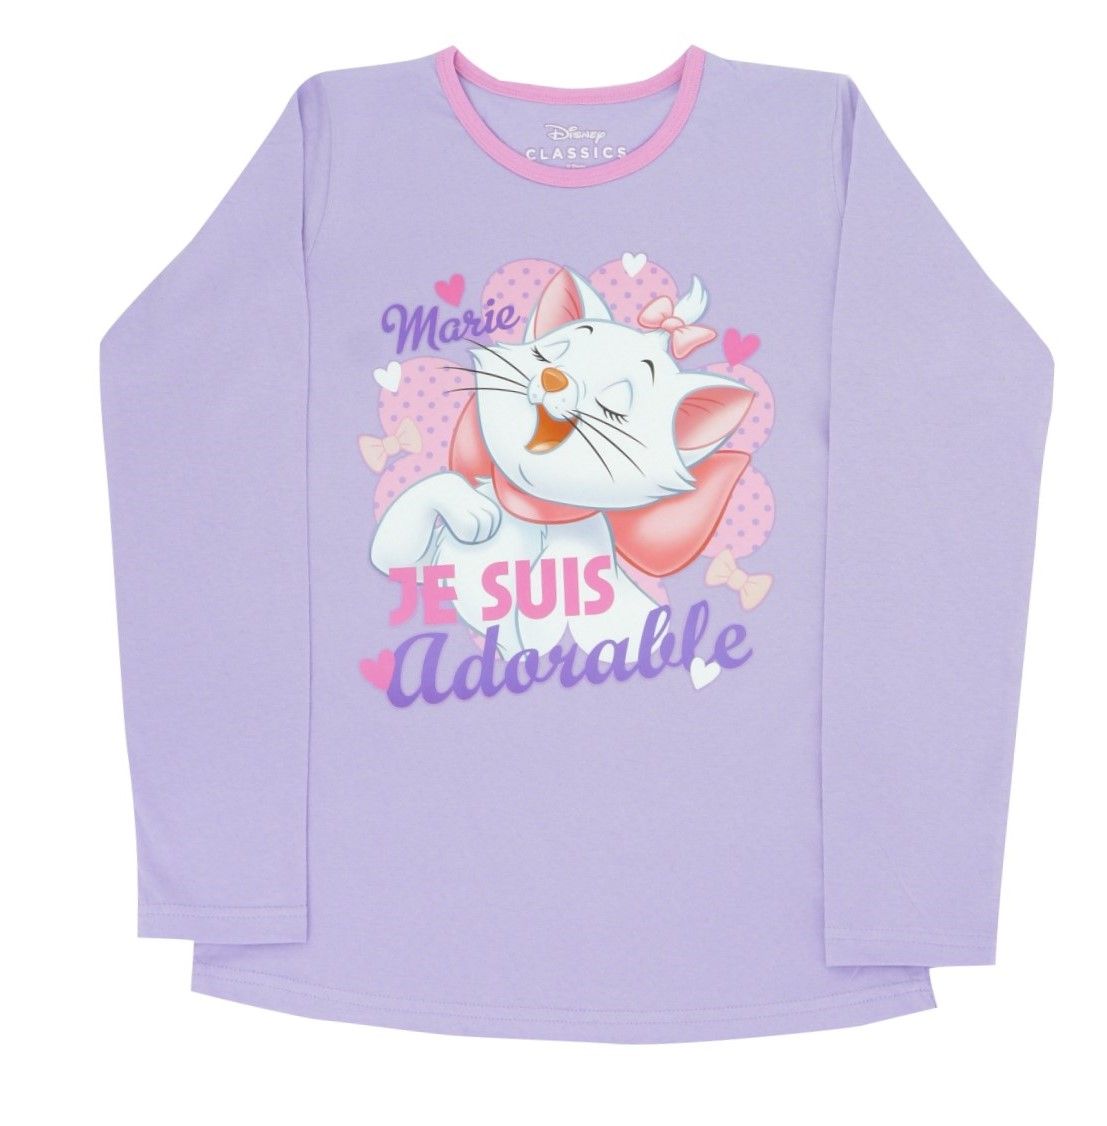 Disney Aristocats "Marie Je Suis" Girls Pyjamas